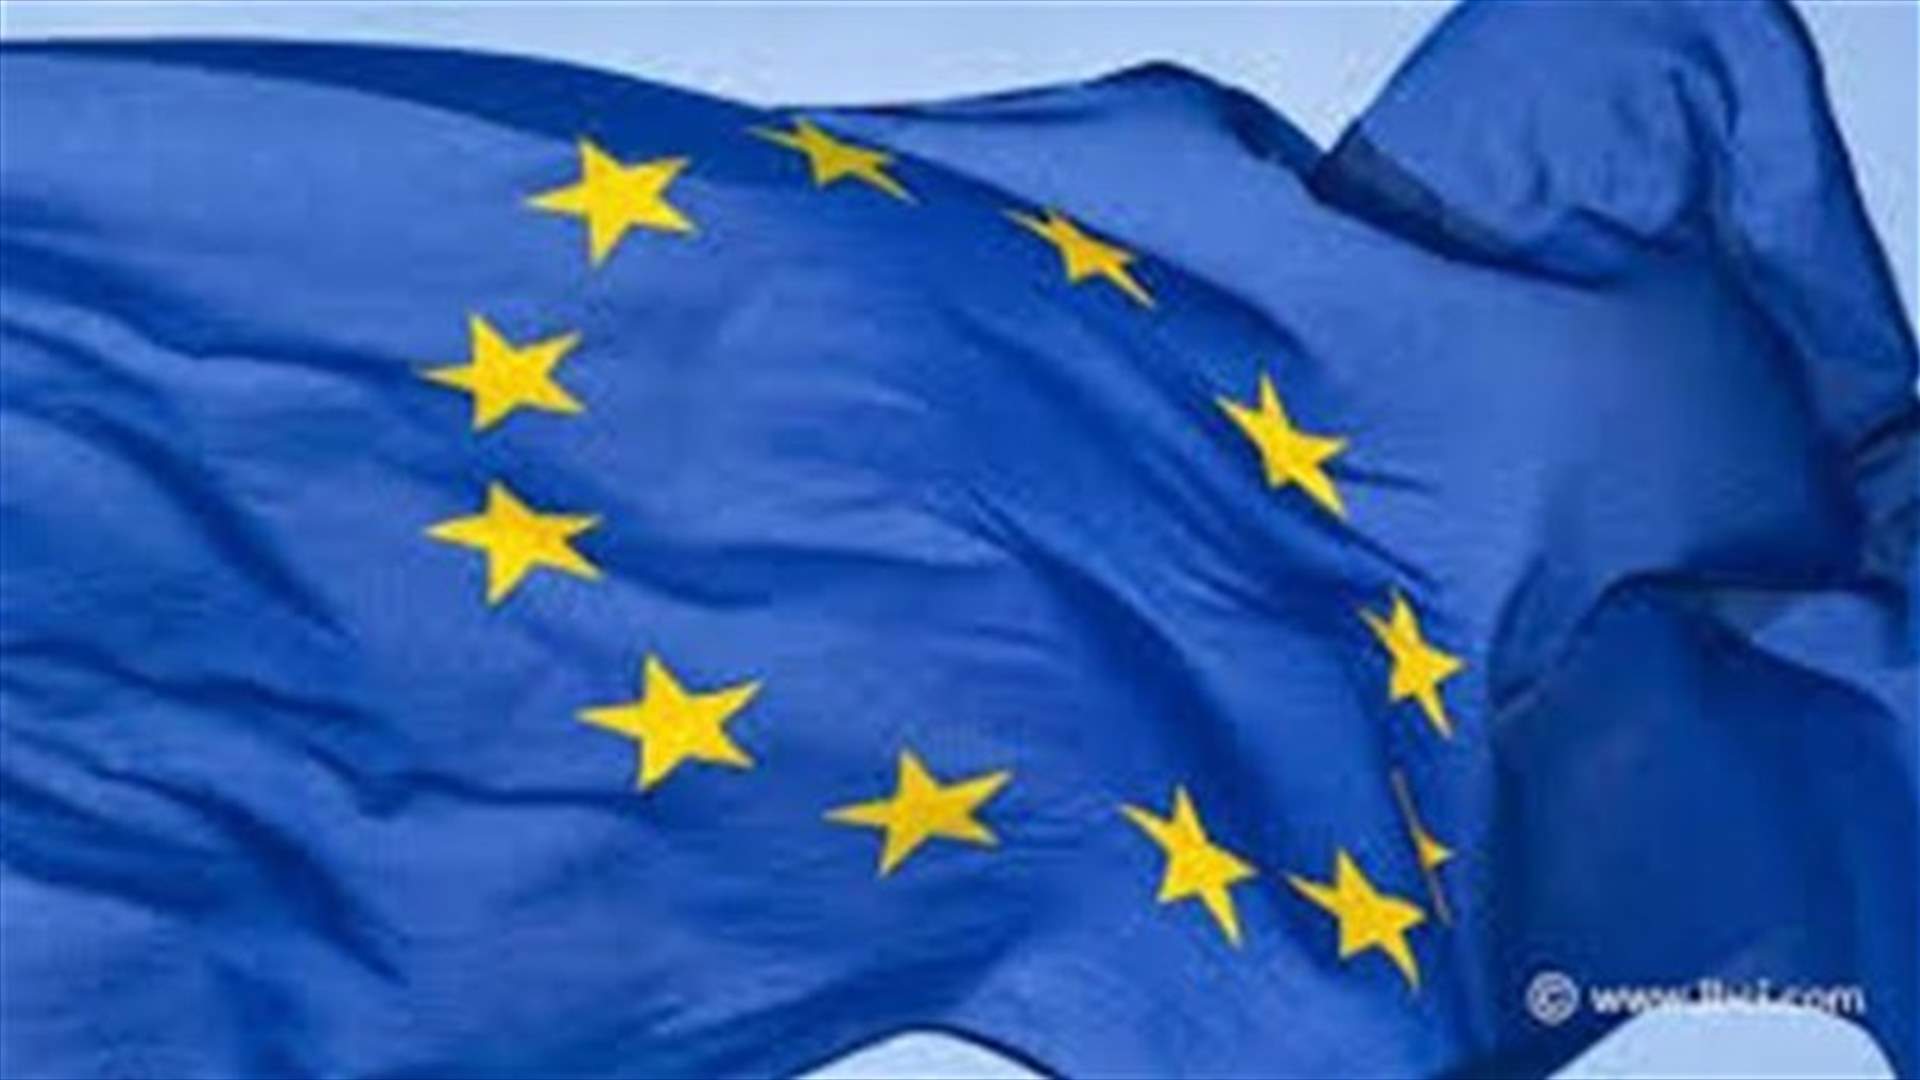 الاتحاد الاوروبي يتبنى عقوبات جديدة تحظر الاستثمارات في القرم